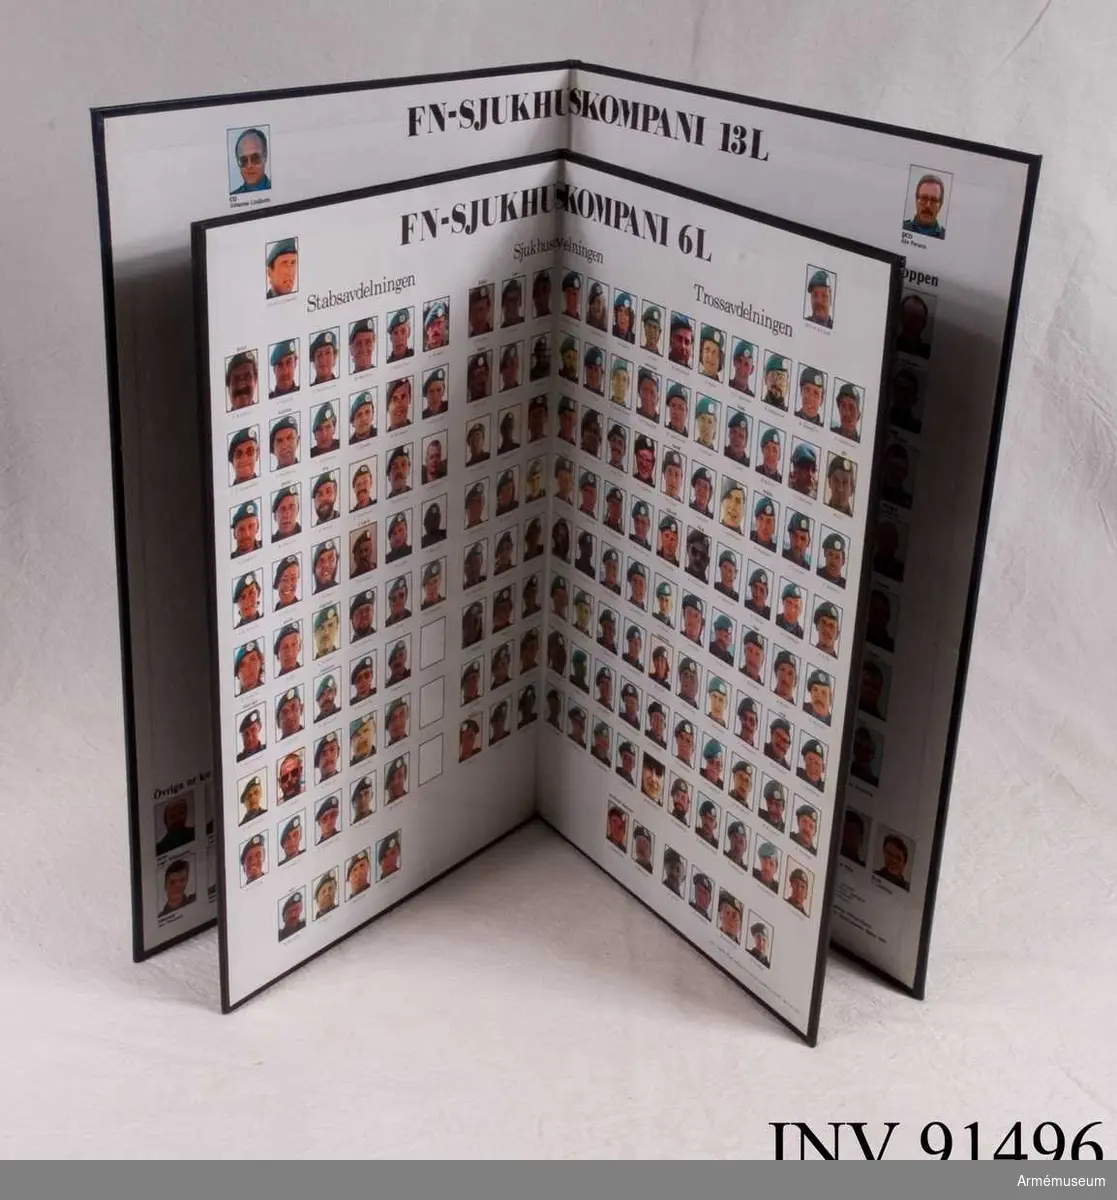 Foton och namn på alla i soldater i 6L och 13L. 